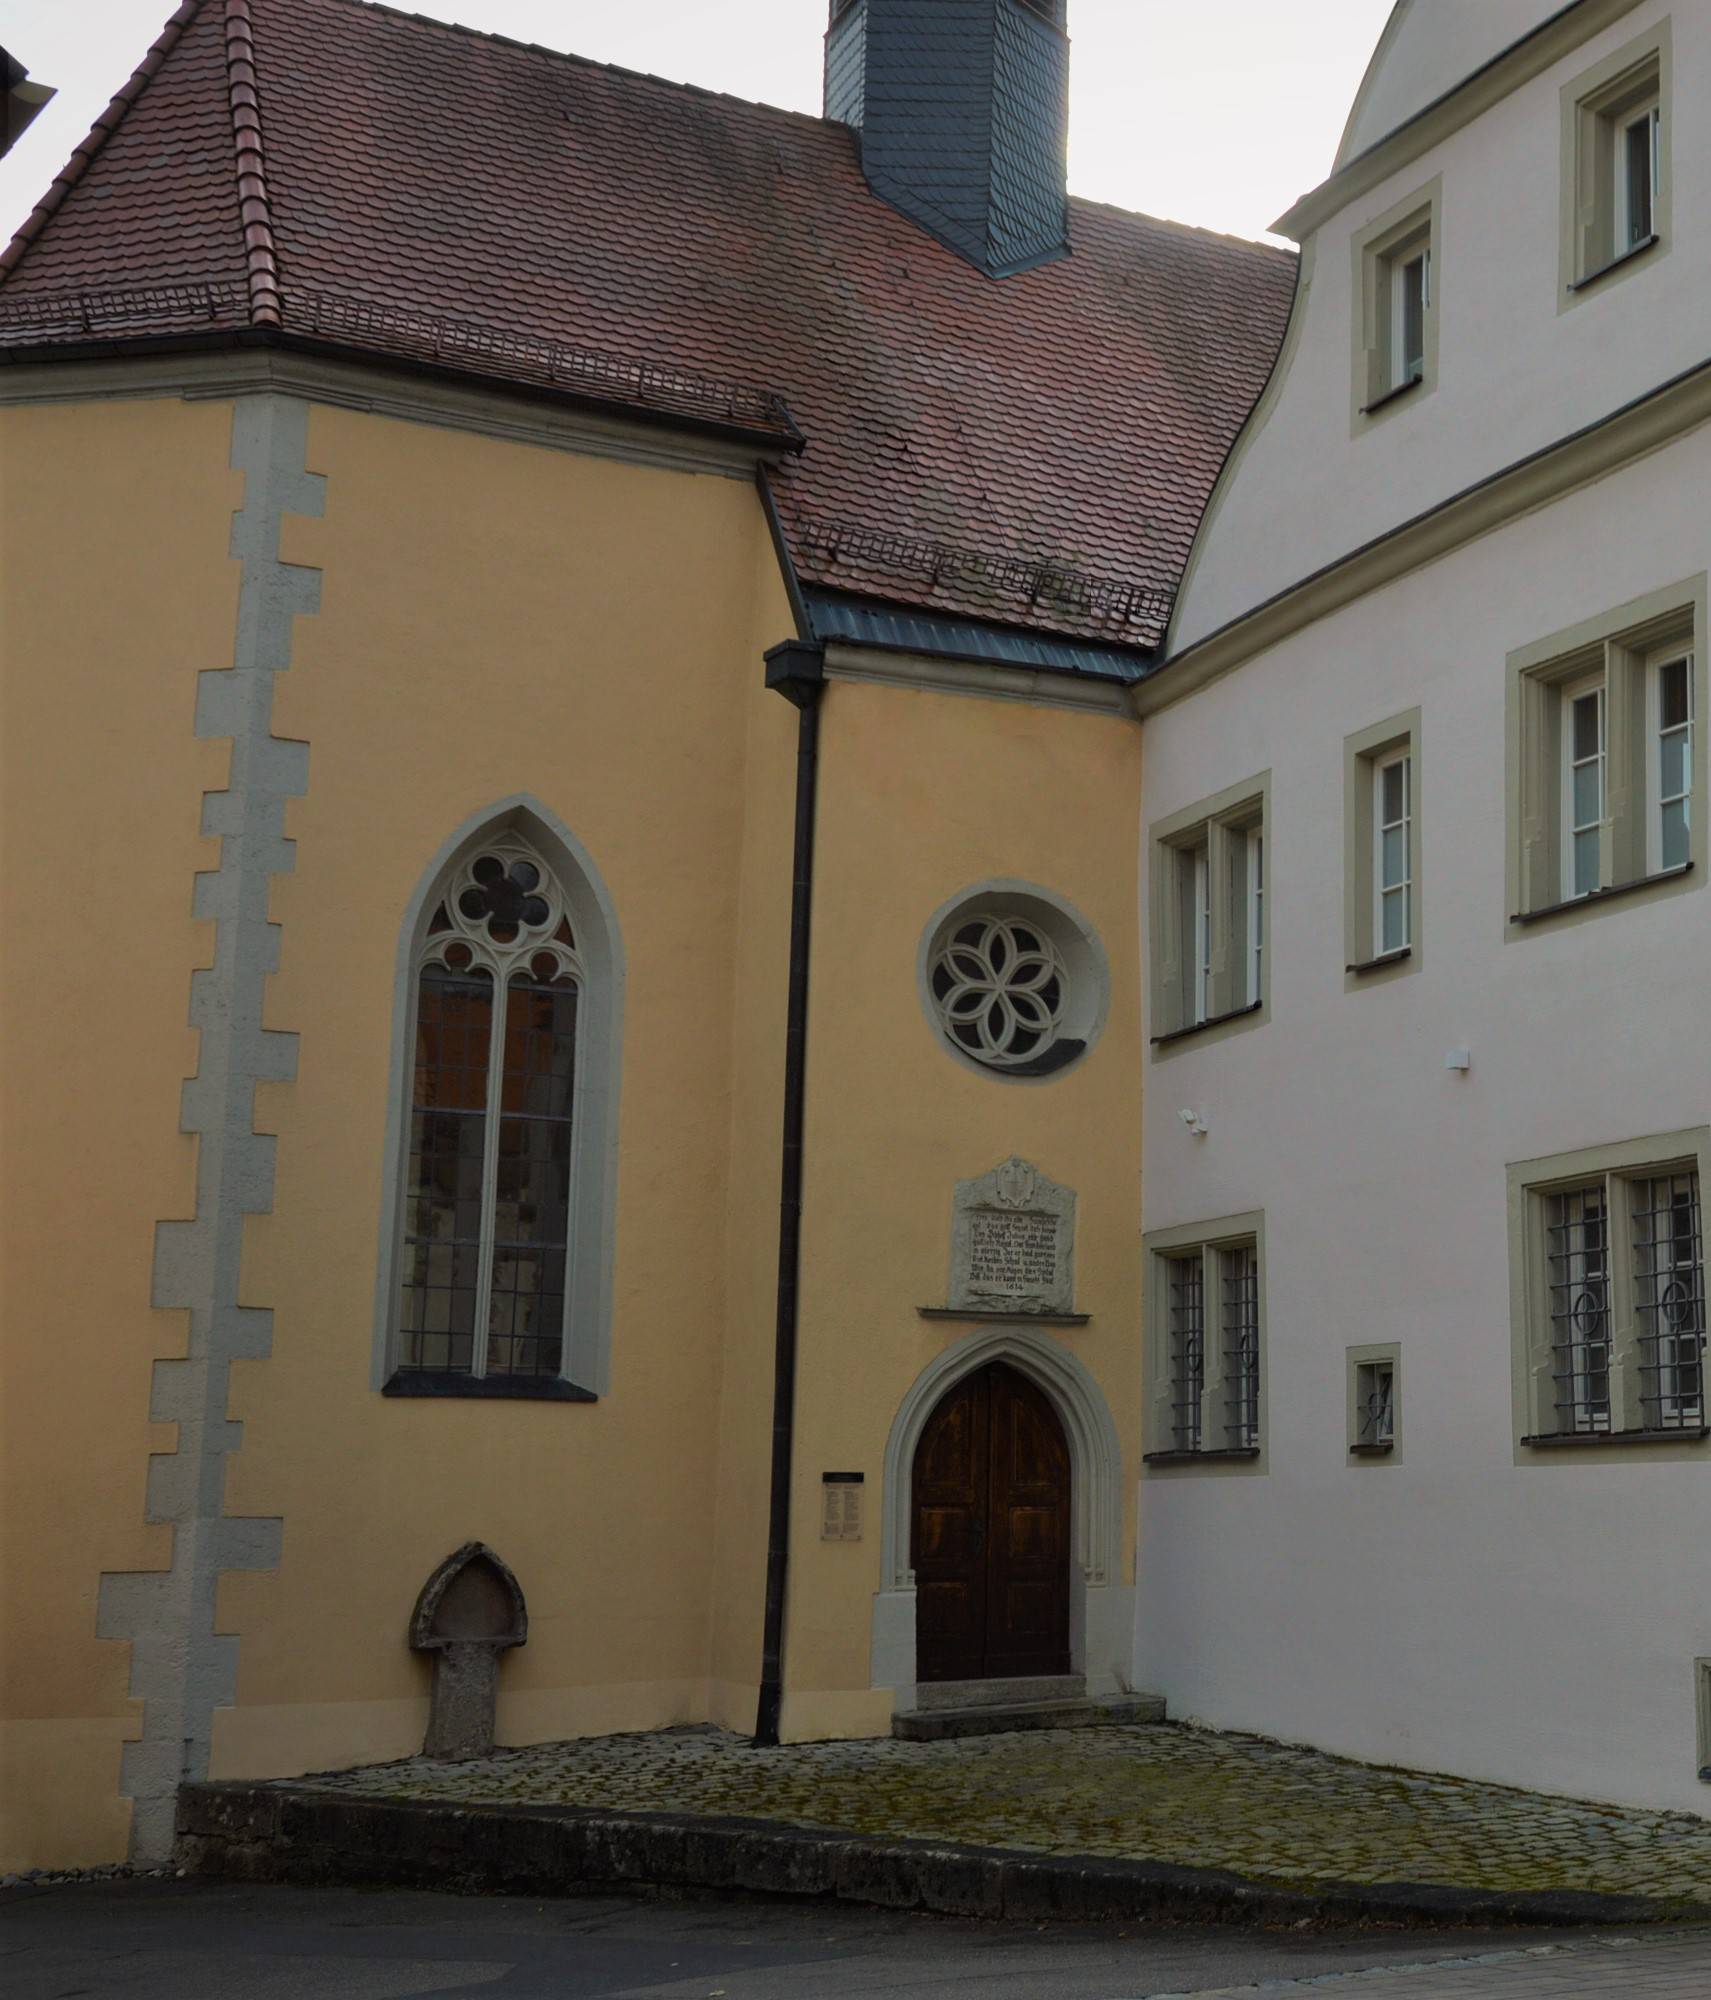  Spitalkirche am Julius-Echter-Stift 